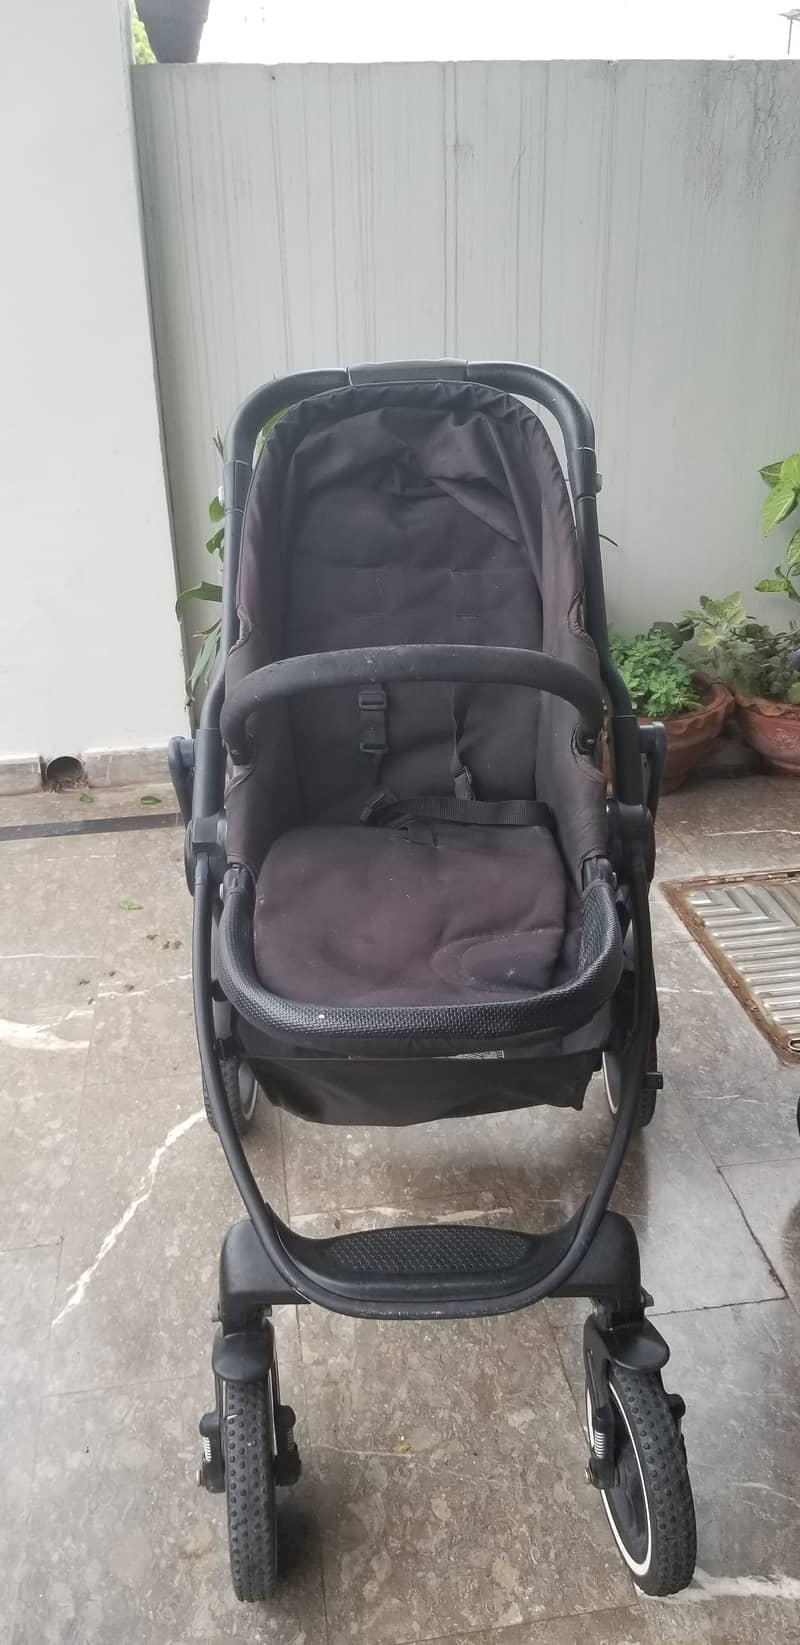 Baby graco evo stroller/pram 0